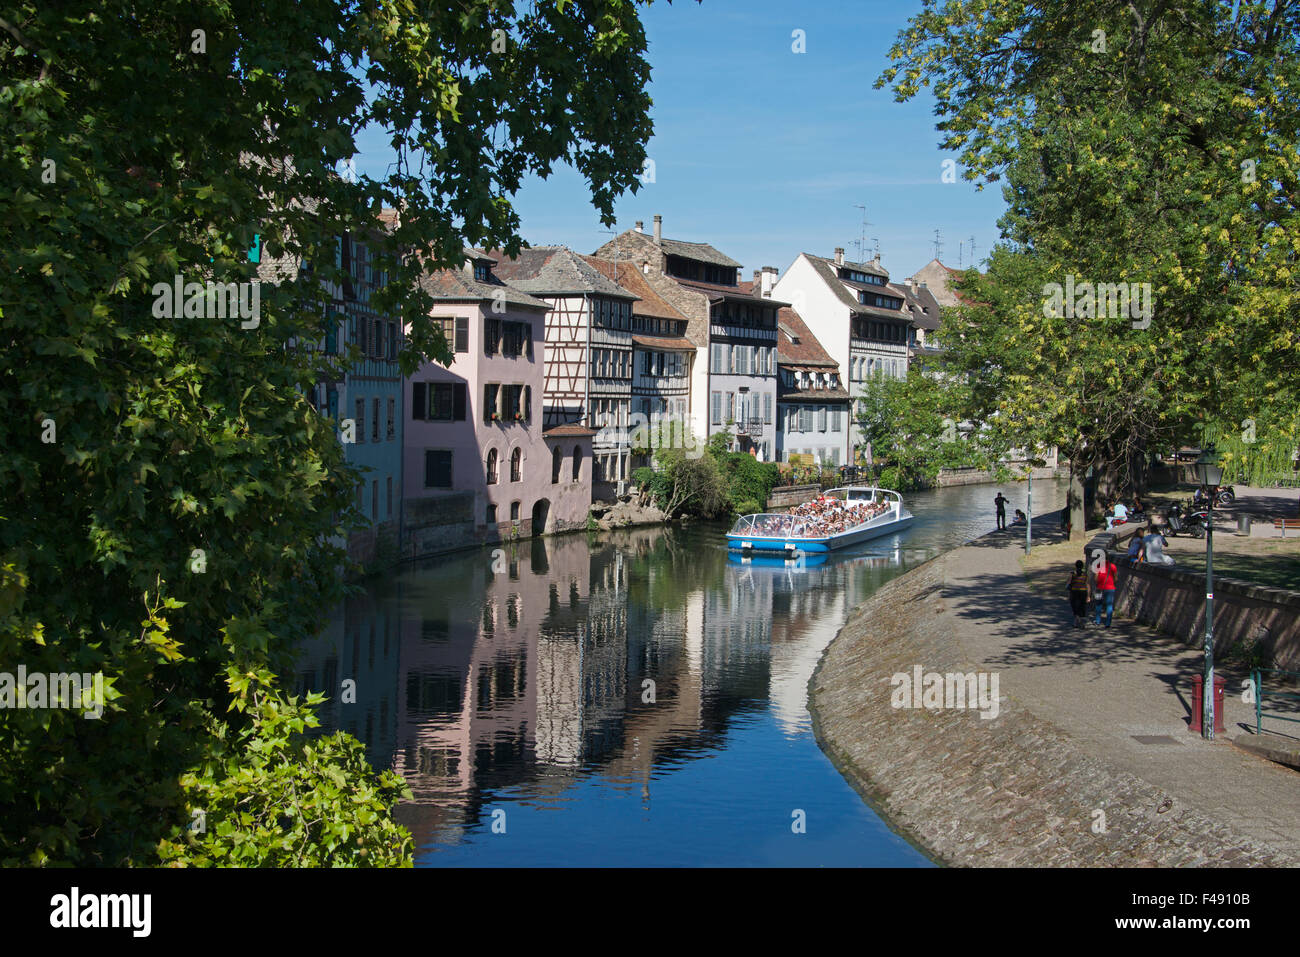 Bateau de tourisme la rivière Ill Petite France Strasbourg Alsace France Banque D'Images